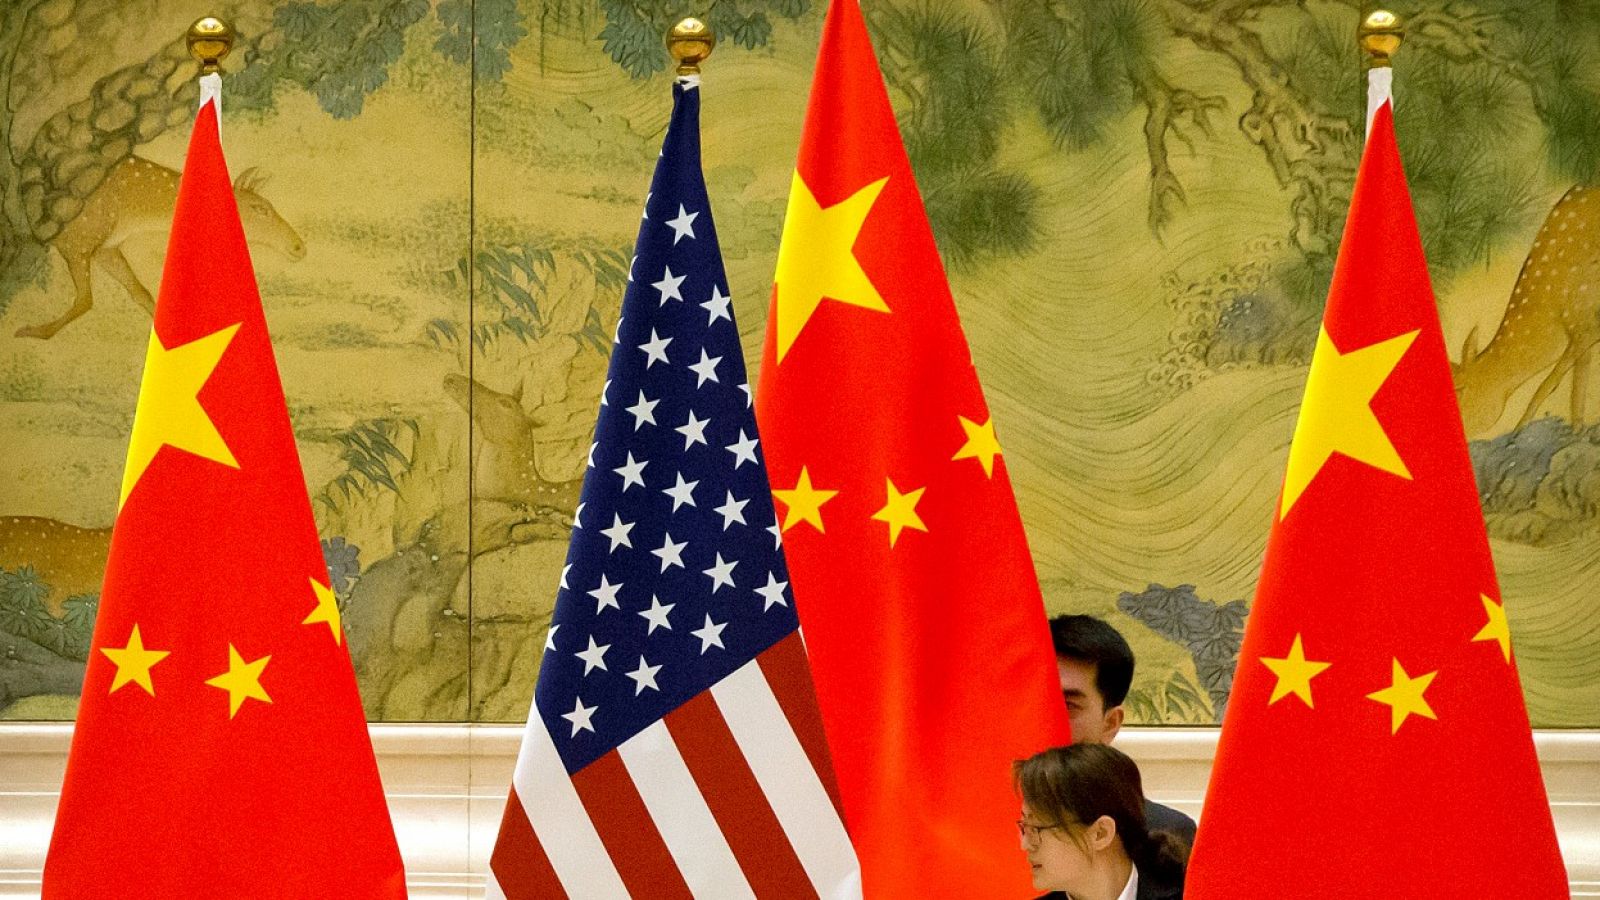 Una persona ajustando una bandera estadounidense entre tres banderas chinas antes de la sesión de apertura de las negociaciones comerciales entre China y Estados Unidos en Pekín, el 14 de febrero de 2019.